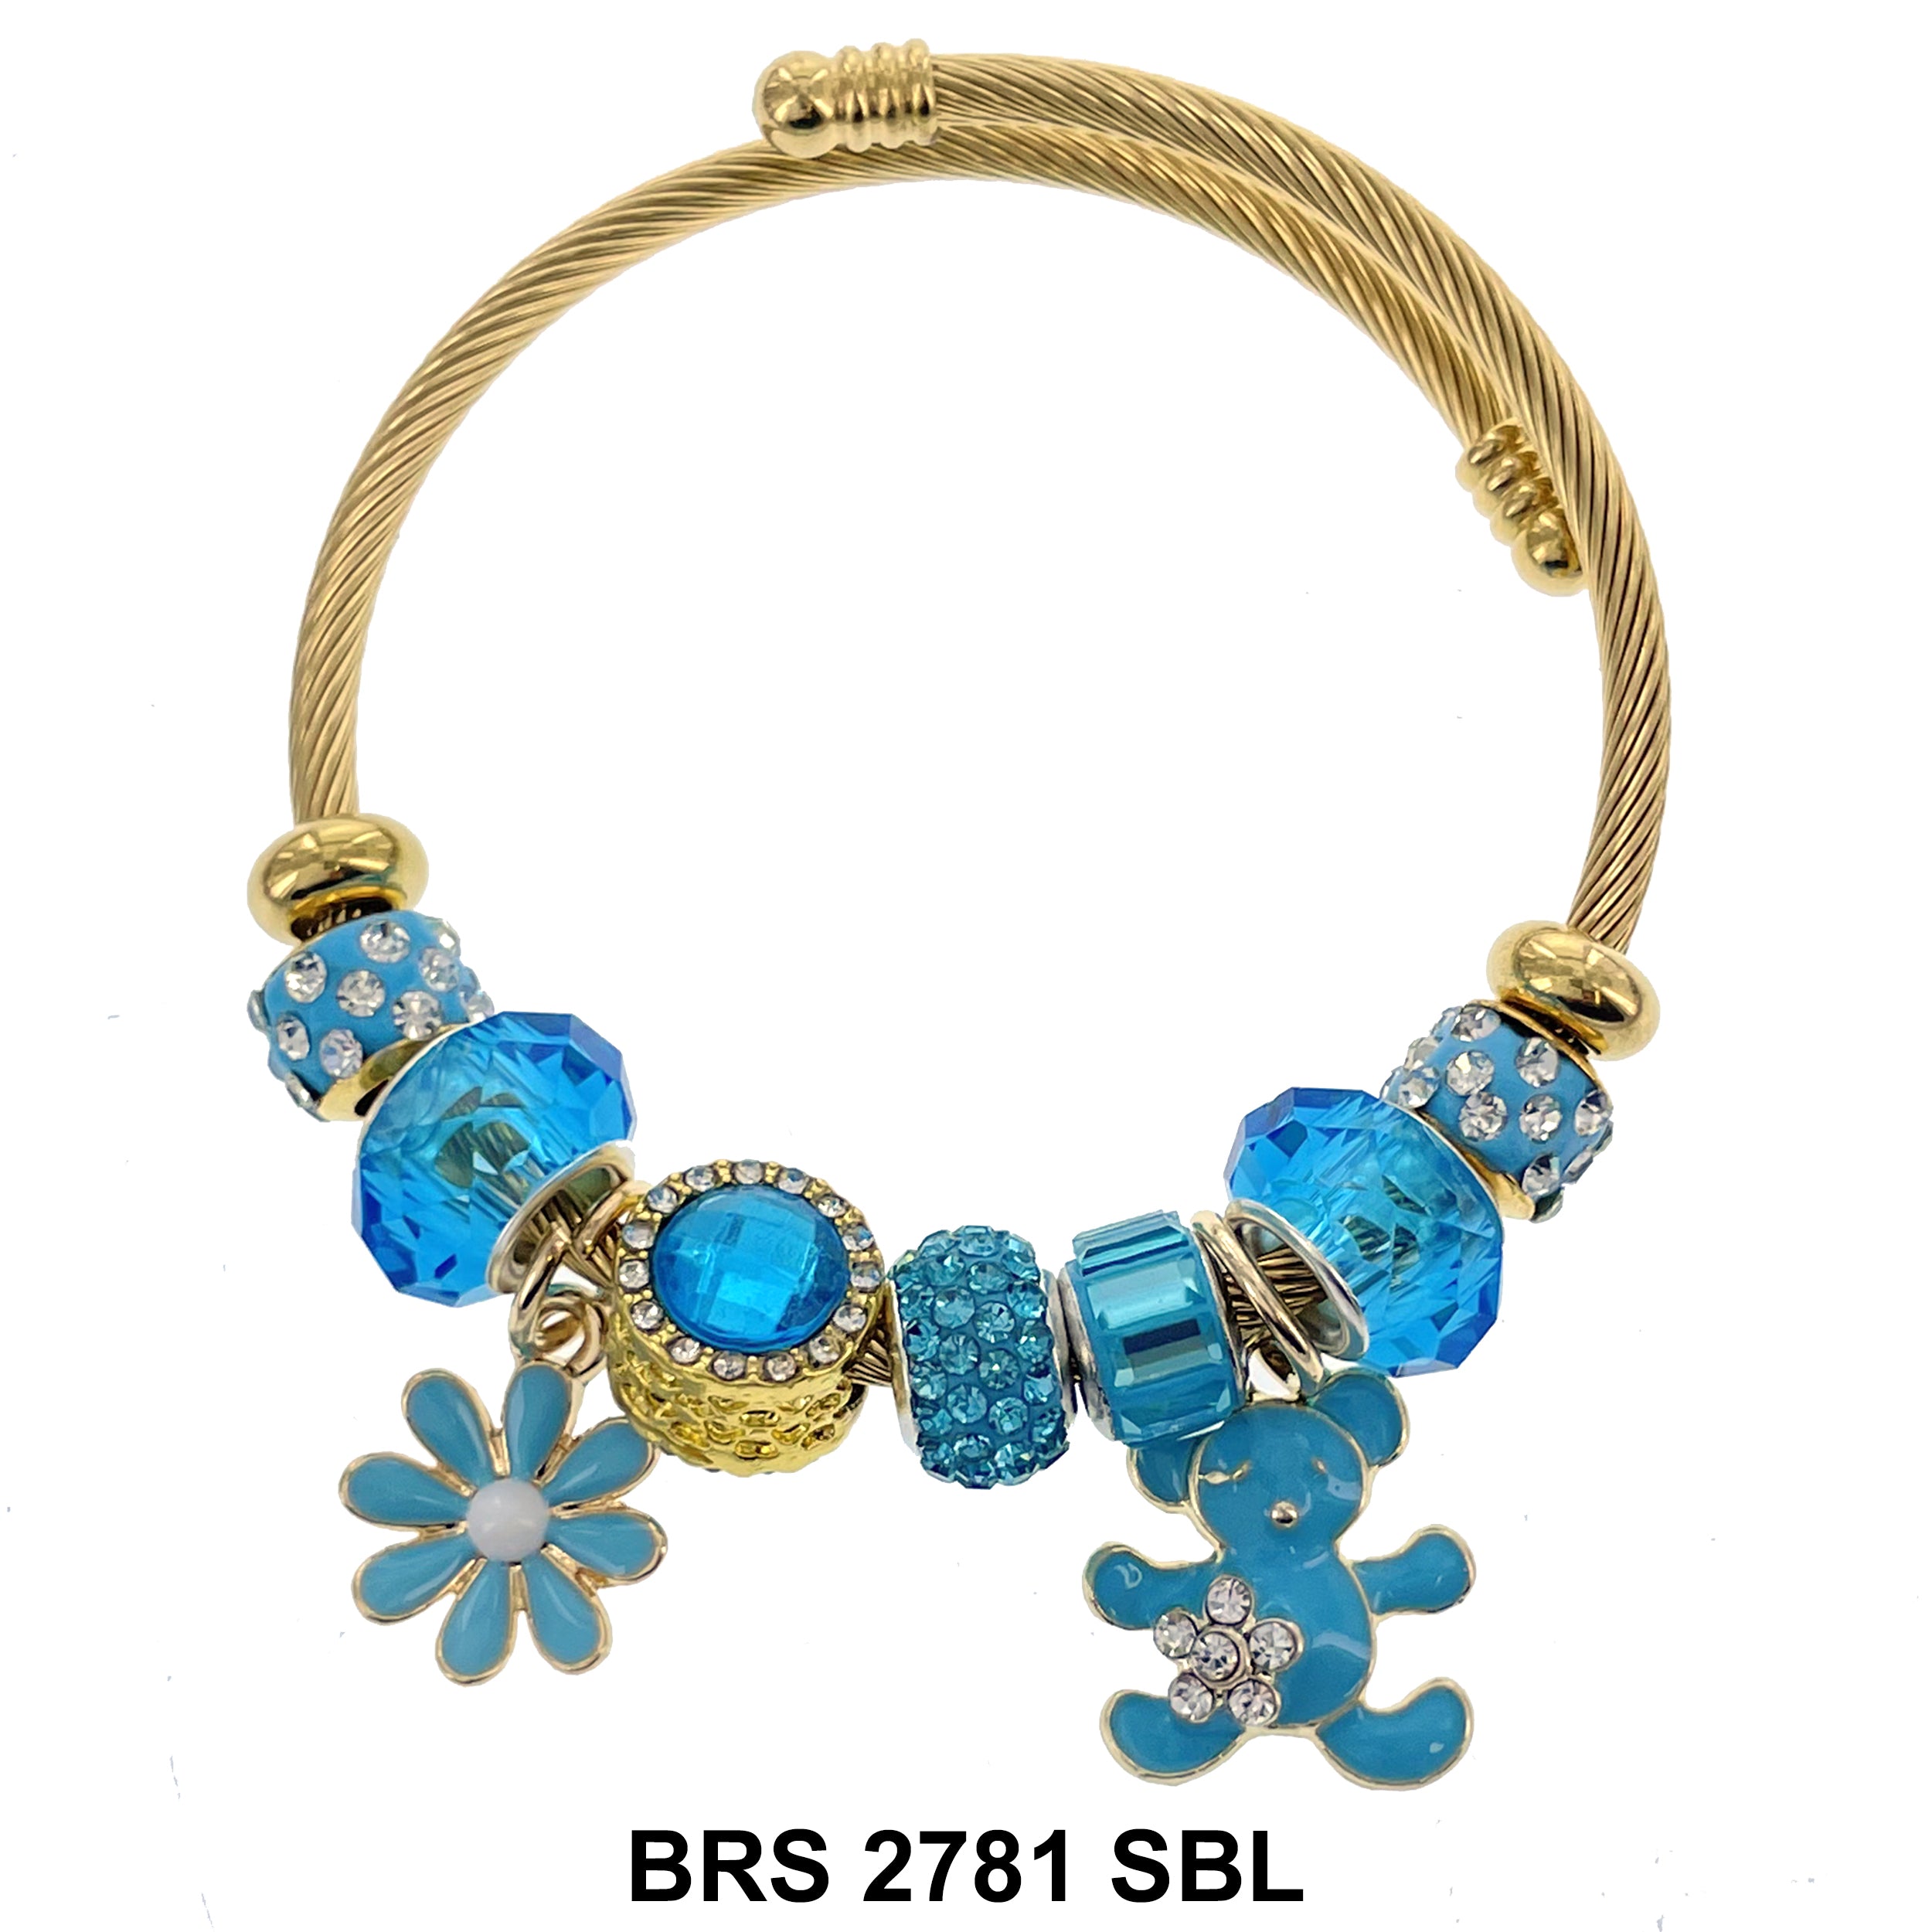 Hanging Charm Bracelet BRS 2781 SBL